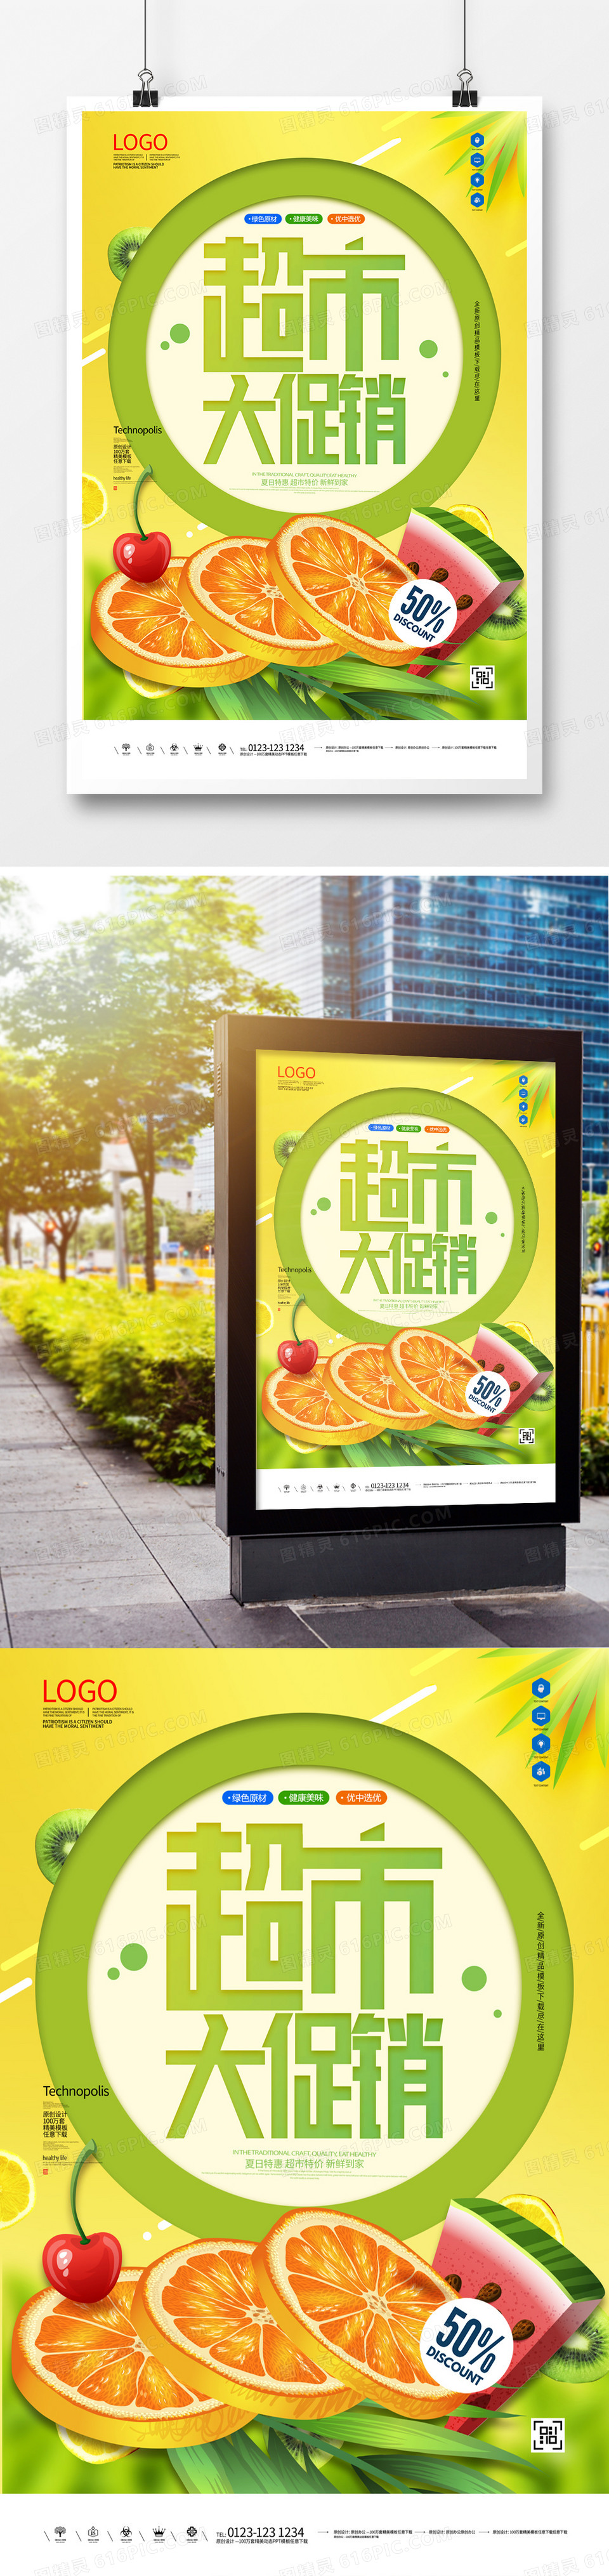 超市大促销原创创意宣传海报模板设计